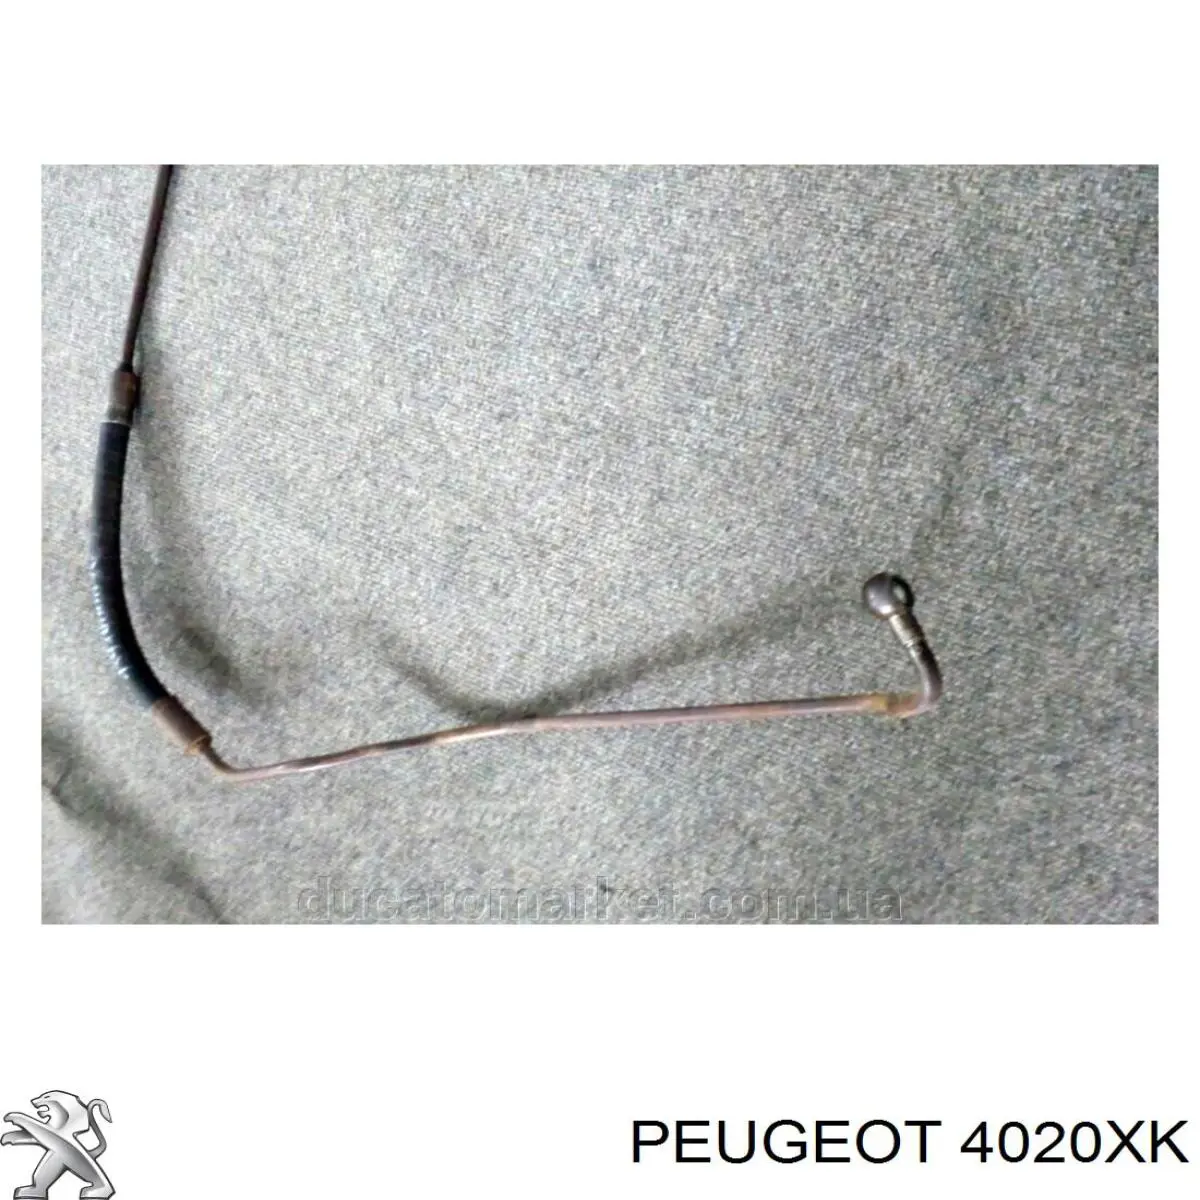 4020XK Peugeot/Citroen mangueira da direção hidrâulica assistida de pressão alta desde a bomba até a régua (do mecanismo)